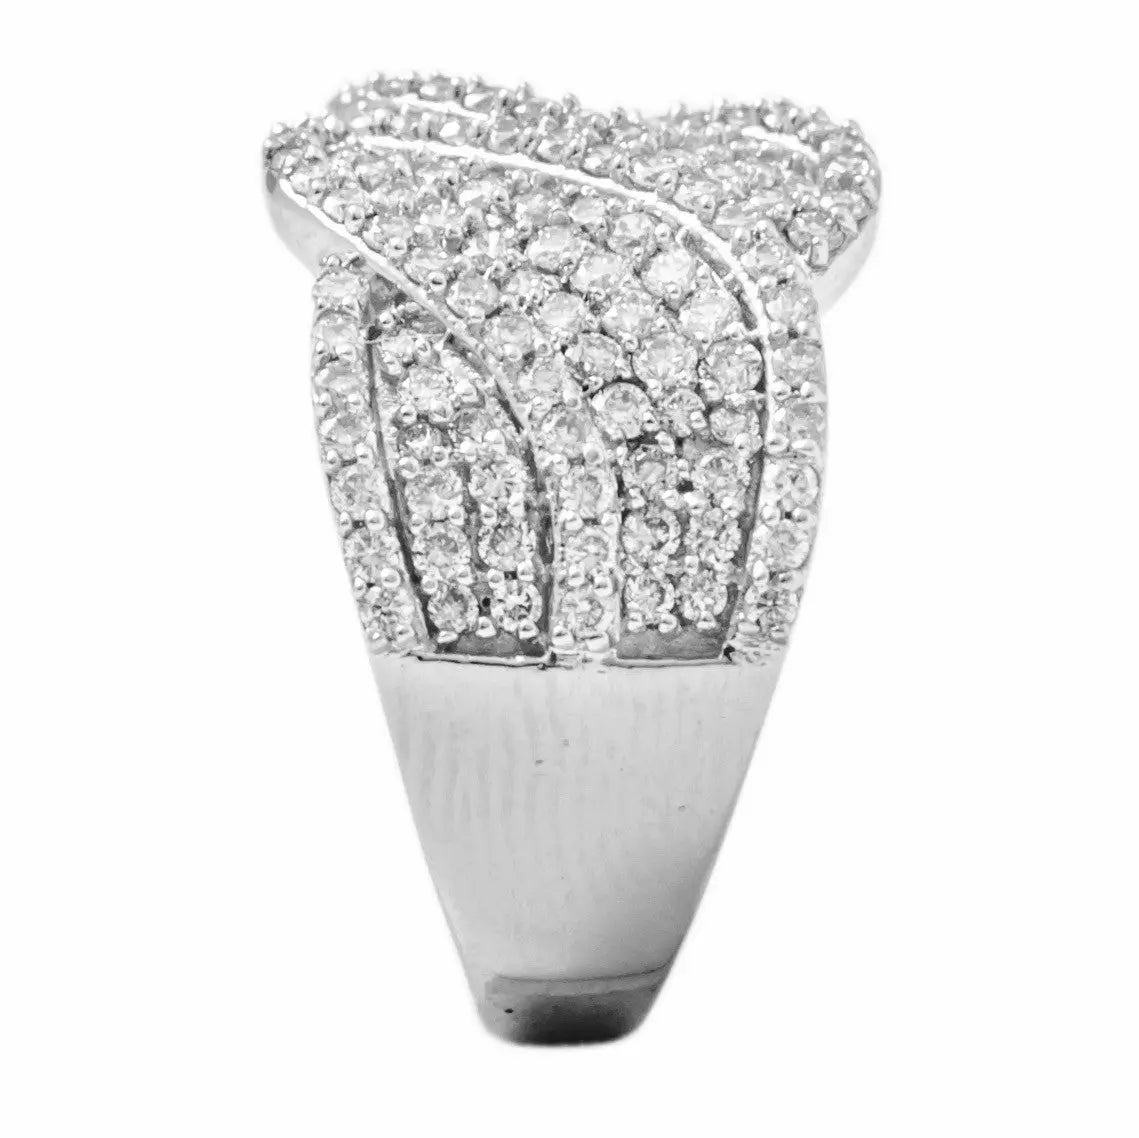 Broad Designer Bridal Ring with Diamonds in Platinum JL PT 263   Jewelove